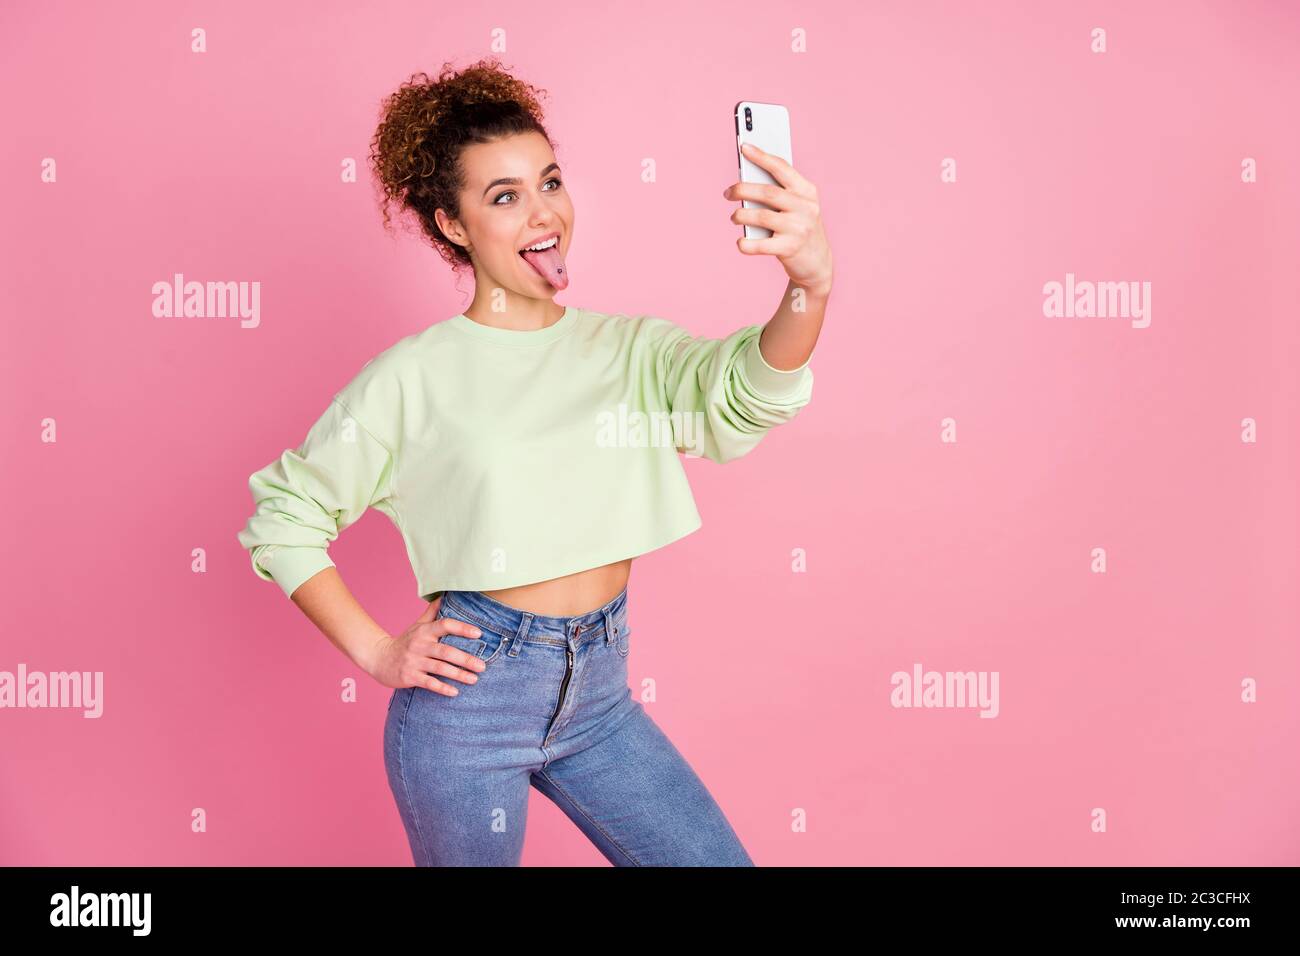 Ritratto di lei bella-osservante attraente bella ragazza di ciliegio girish folle allegro che prende facendo selfie grimacing divertirsi isolato sopra Foto Stock